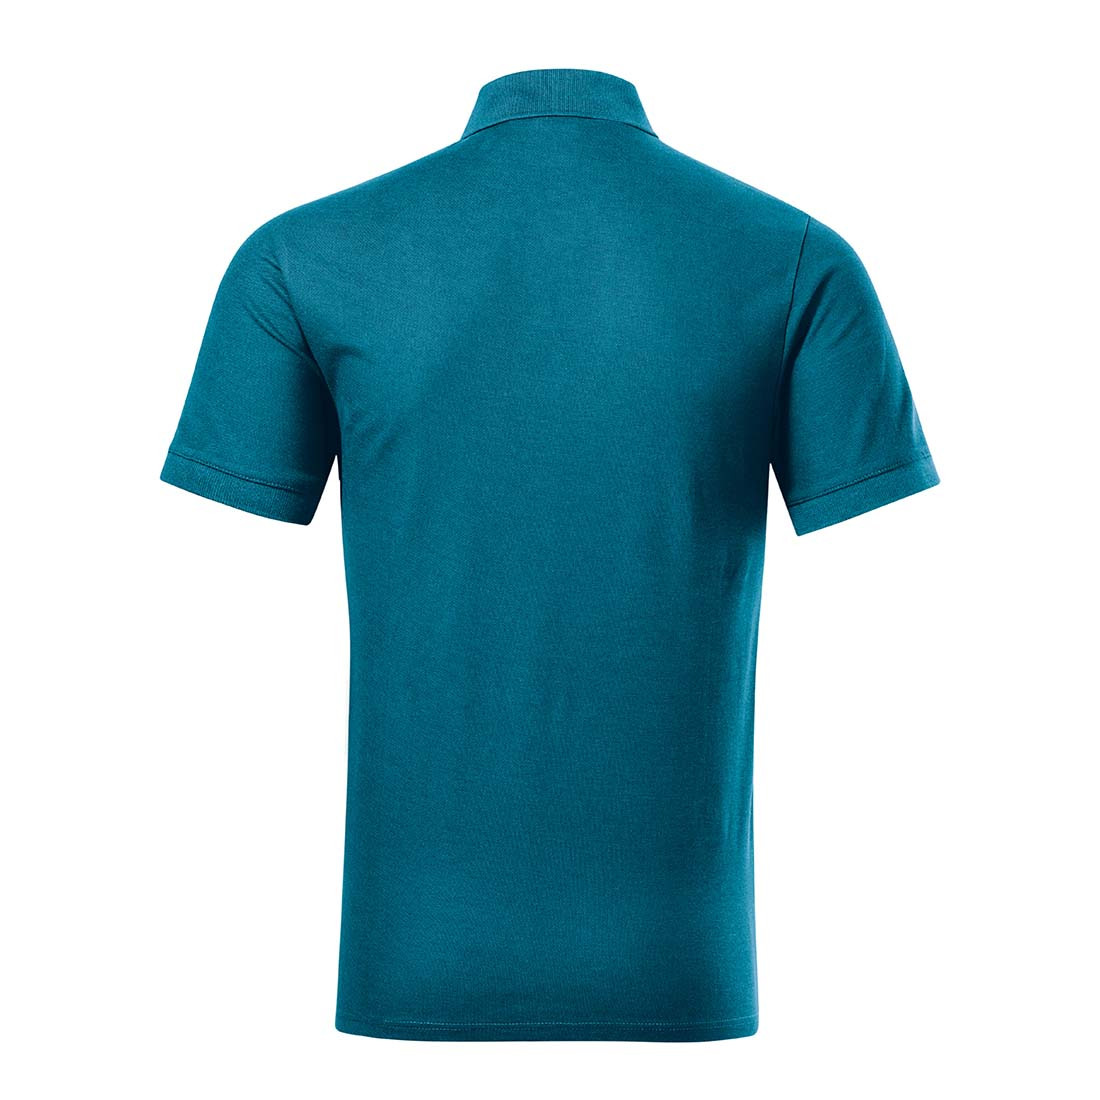 Herren-Poloshirt aus Bio-Baumwolle - Arbeitskleidung